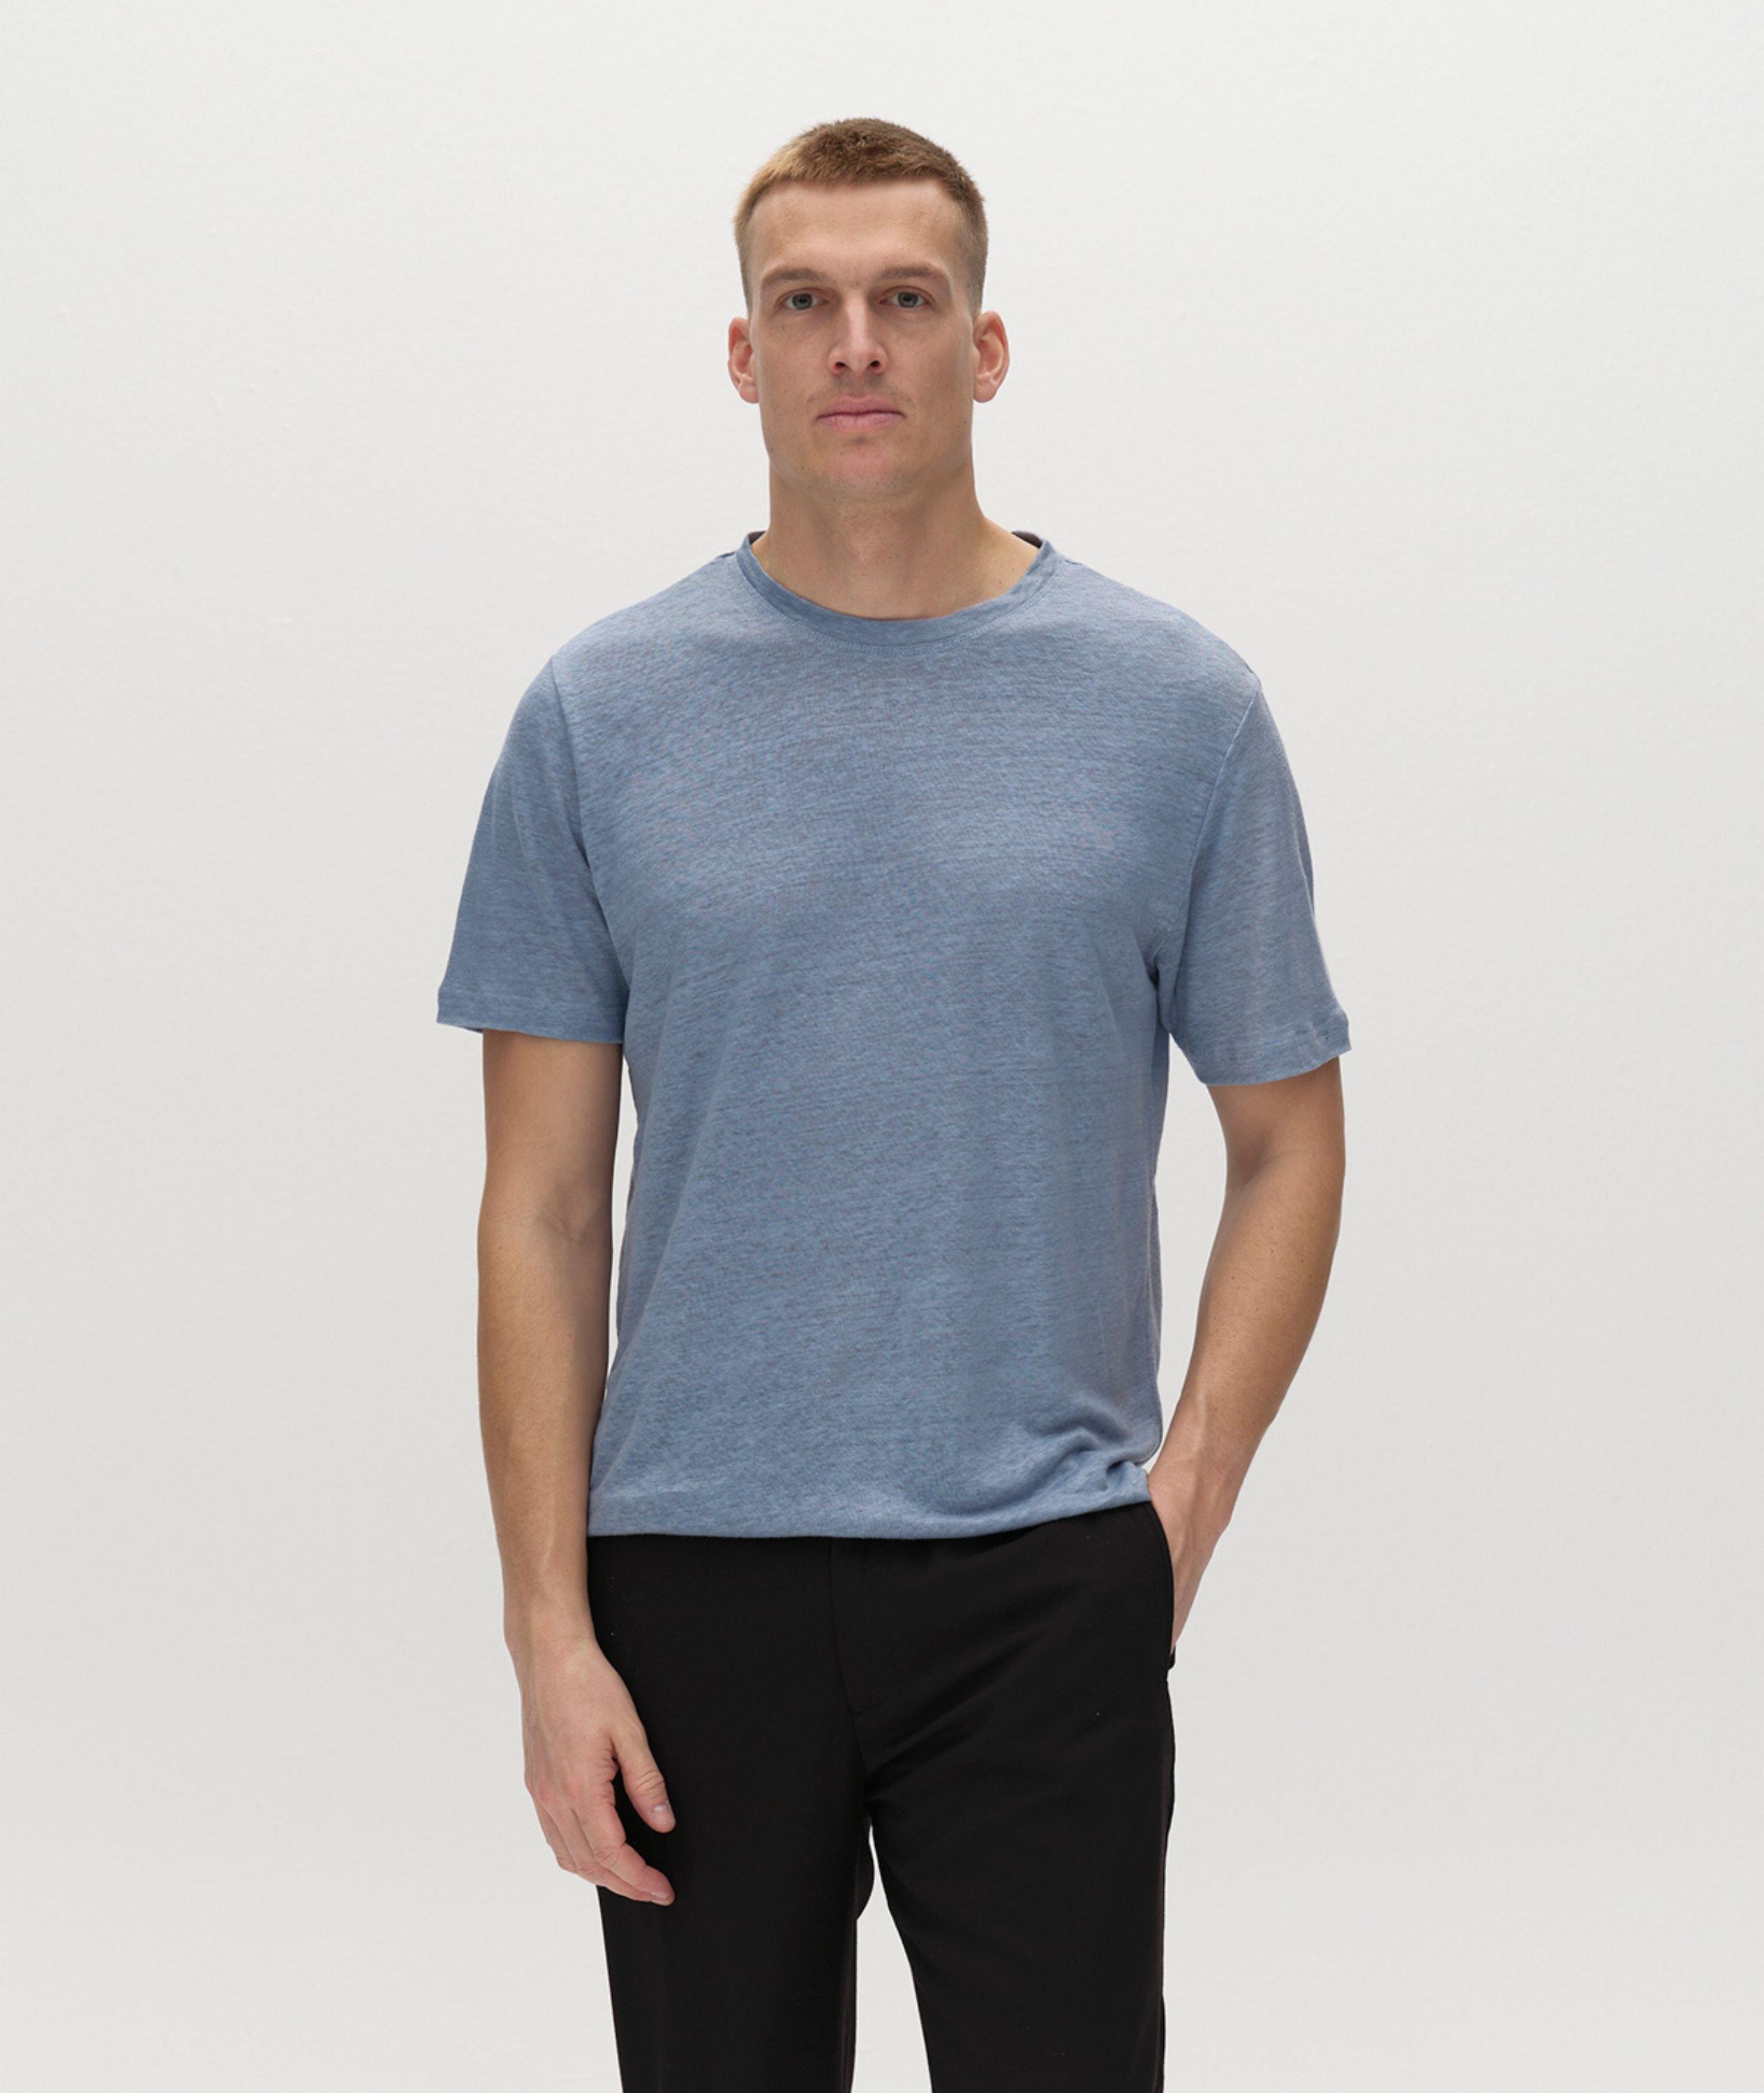 Duke Linen T-Shirt image 2